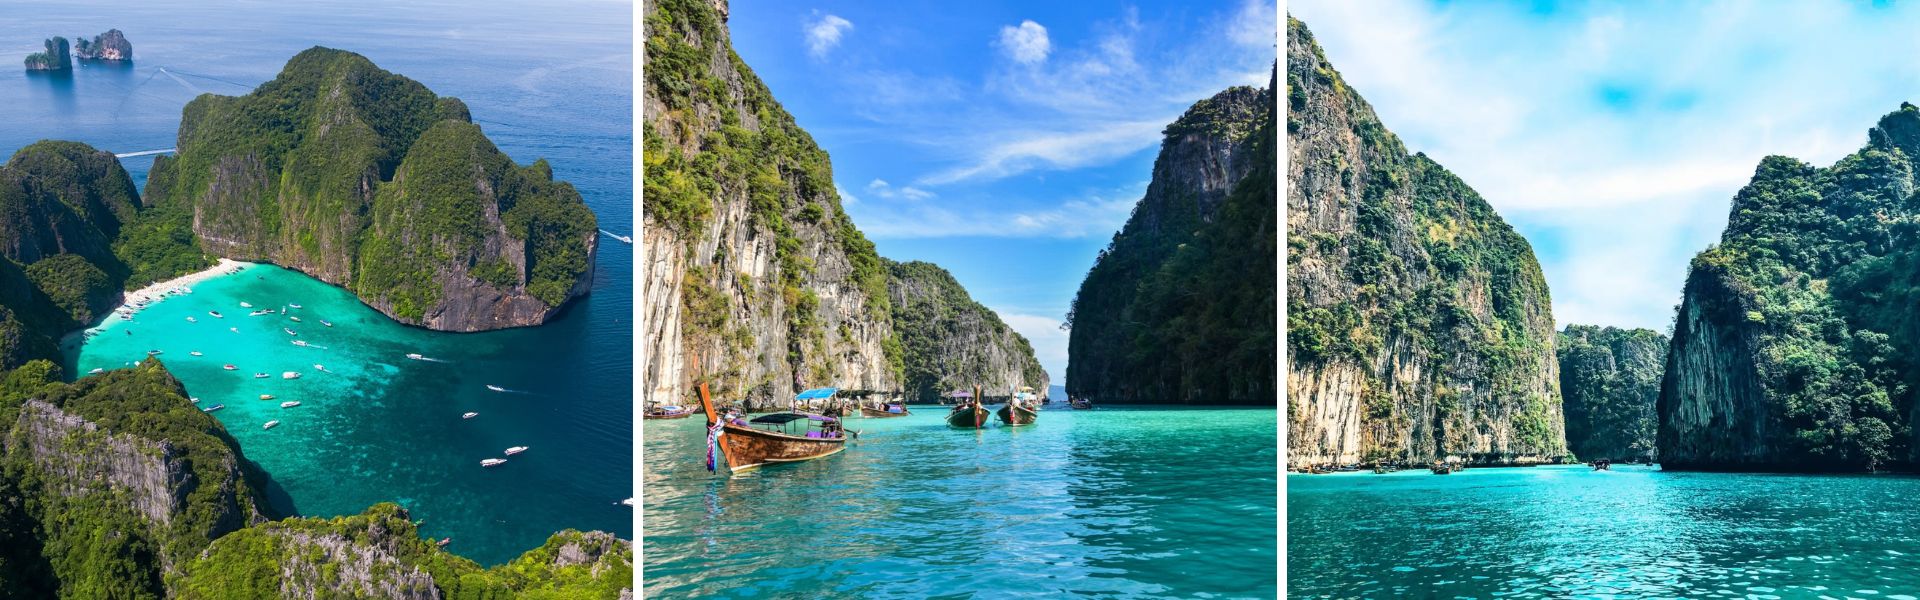 Phuket Sehenswürdigkeiten und Aktivitäten  |Thailand Reisen